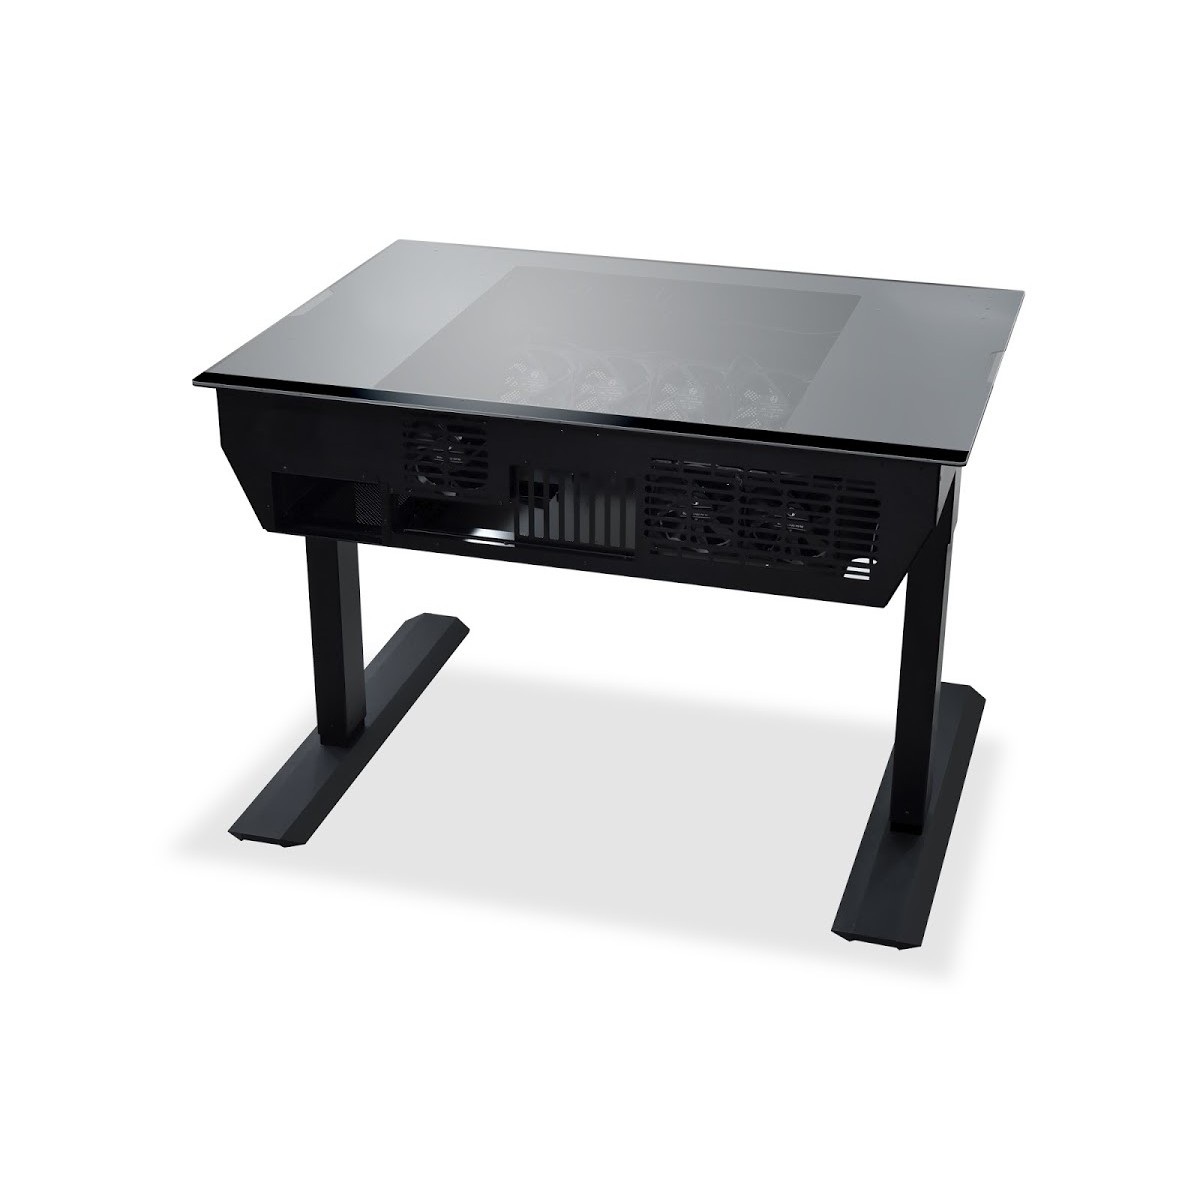 Lian Li - Lian Li DK-04F Electrical Height Adjustable Desk Case - Black